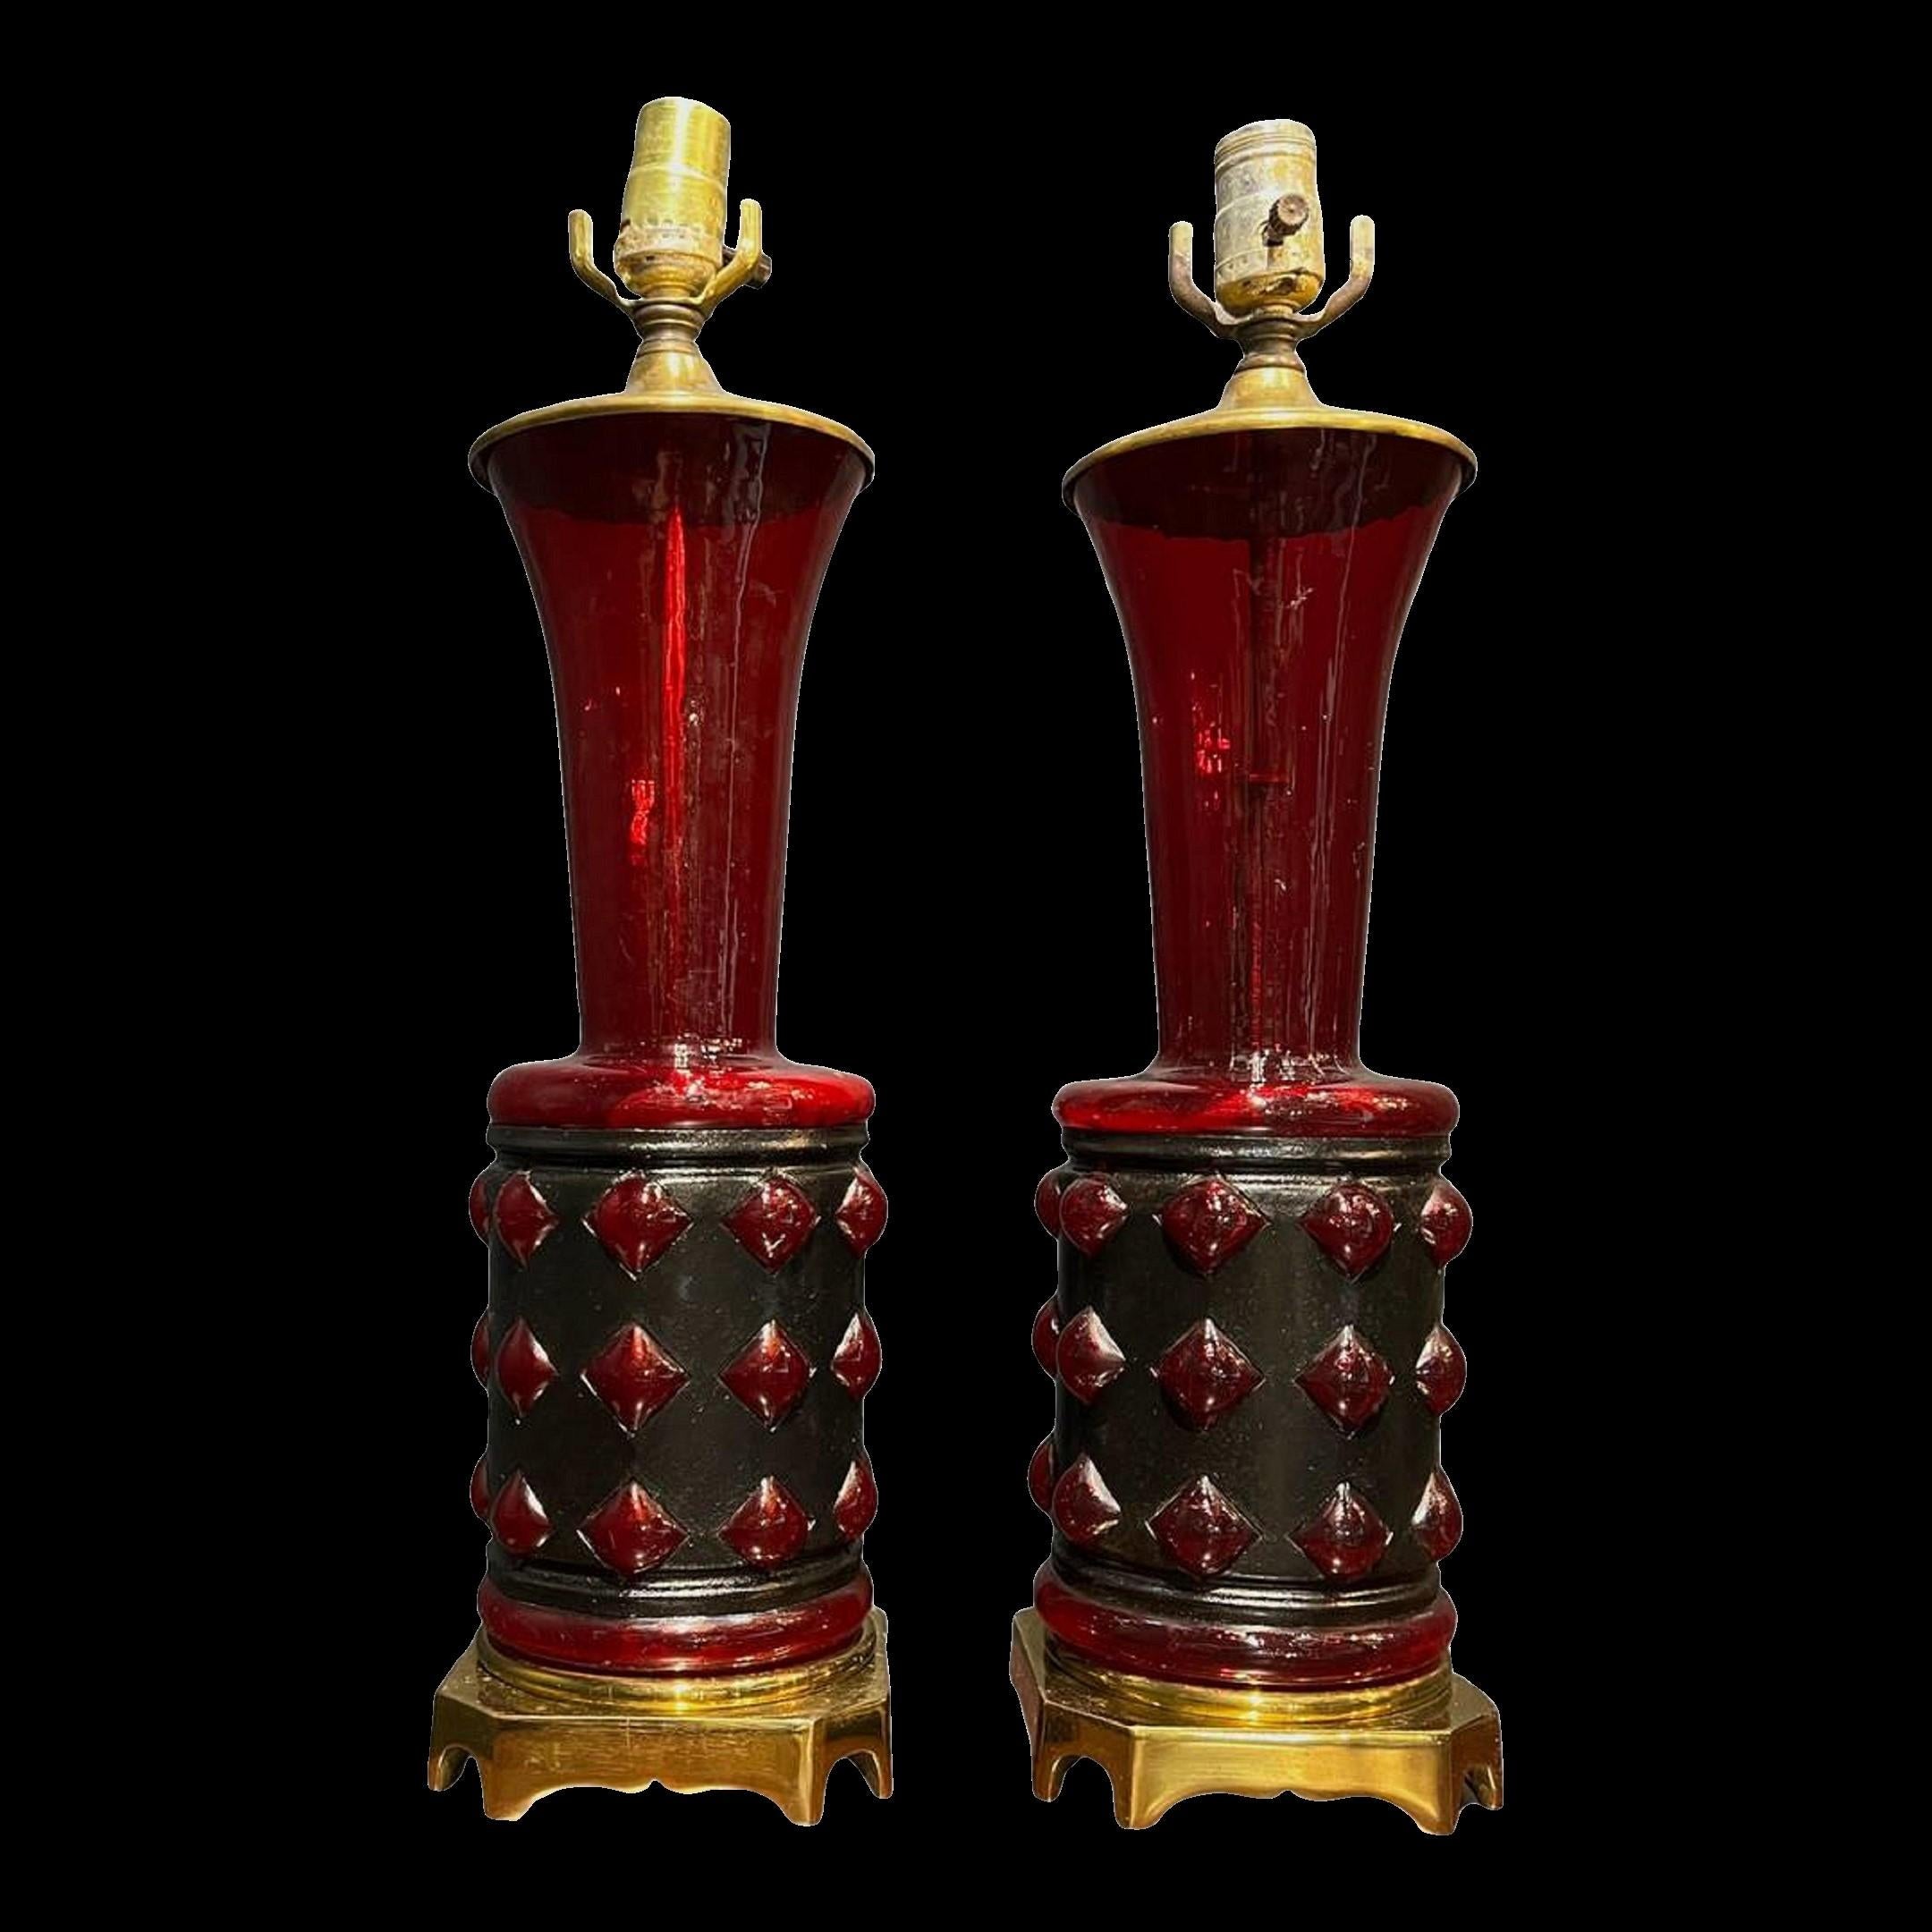 Paire de lampes de table en verre soufflé dans une monture en métal, datant des années 1930, verre inhabituel de couleur rubis.